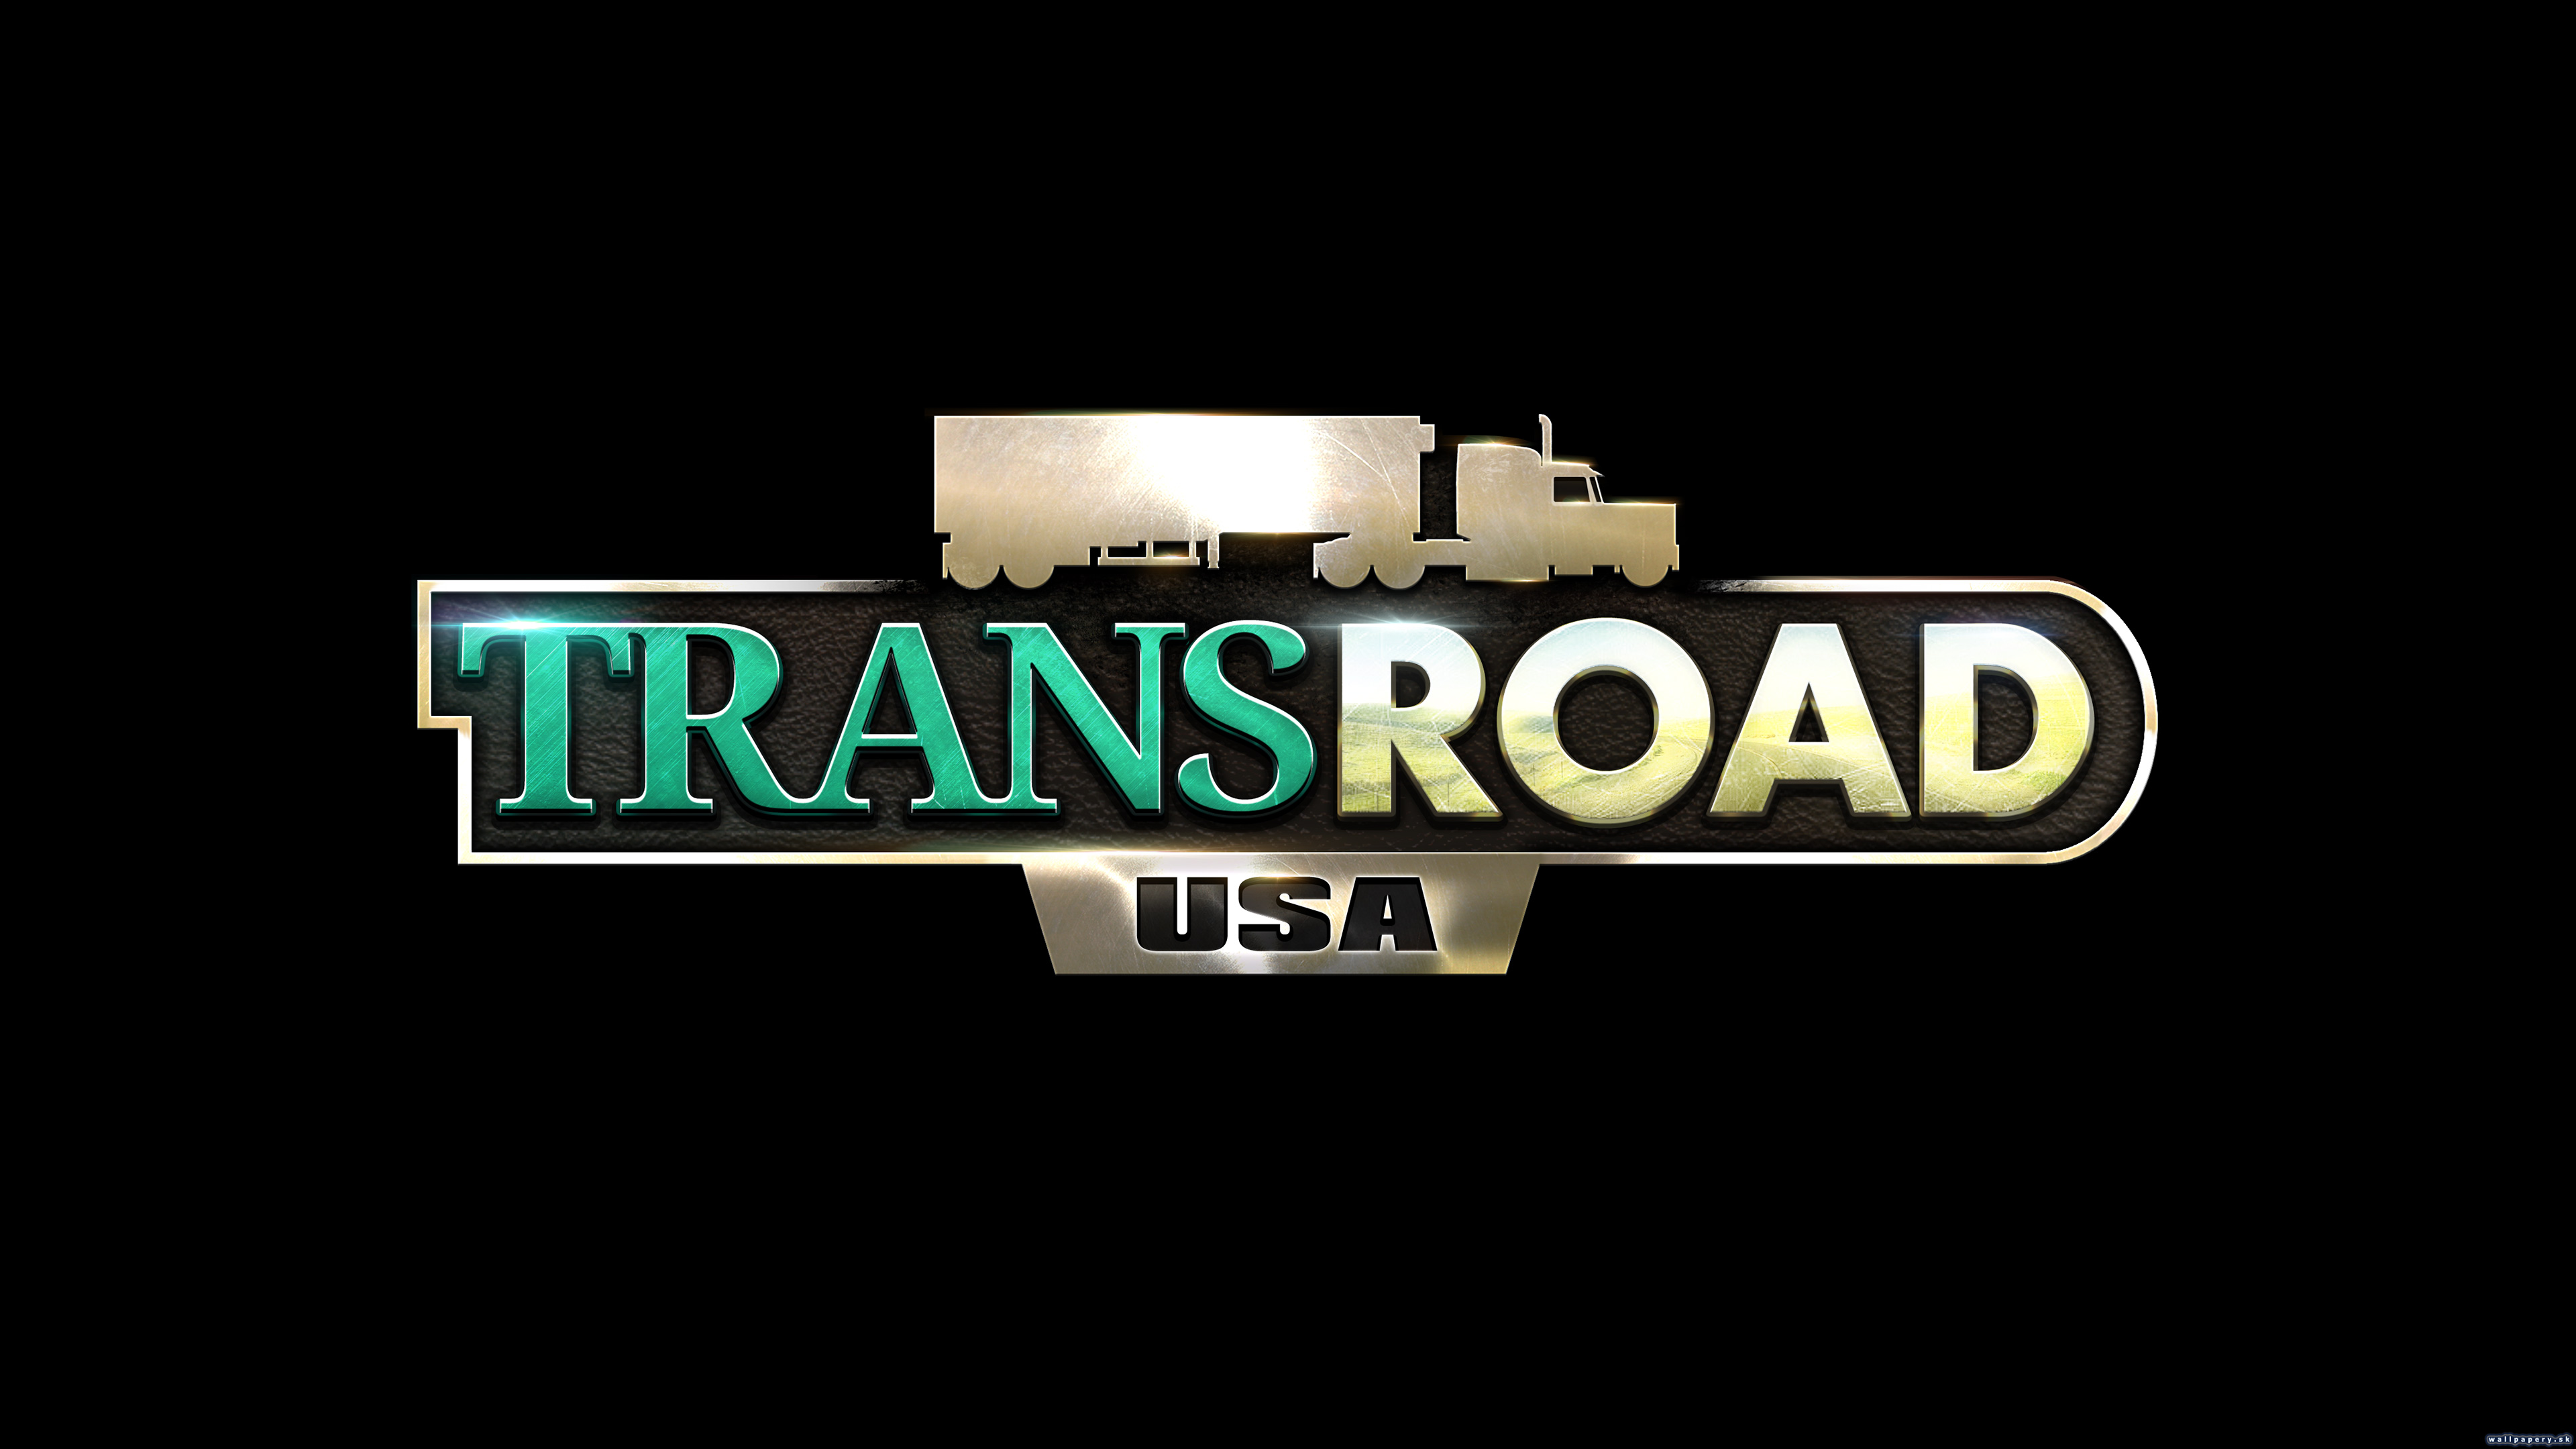 TransRoad: USA - wallpaper 2